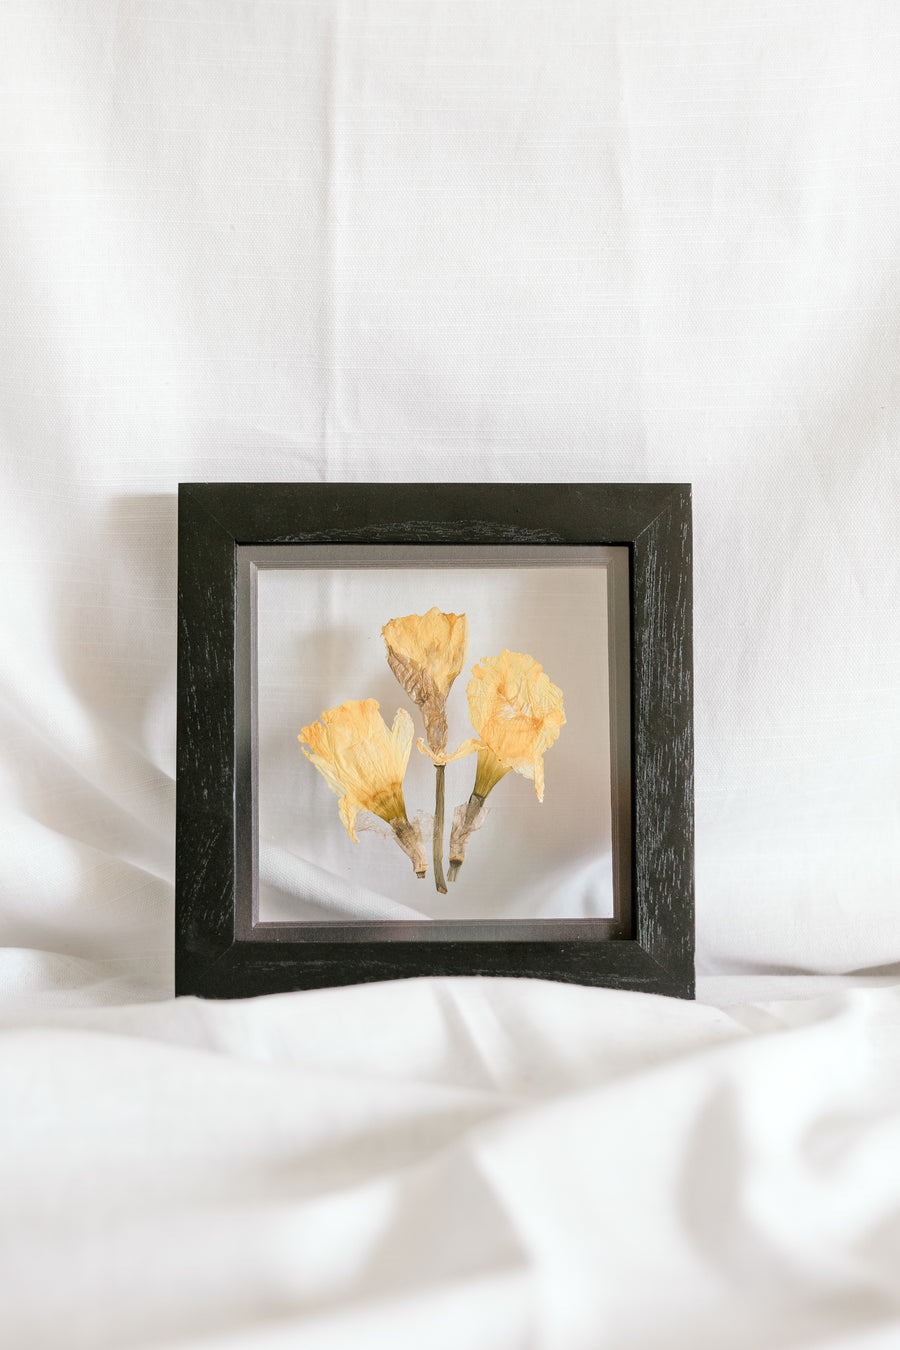 6x6 March birth flower frame - Daffodil